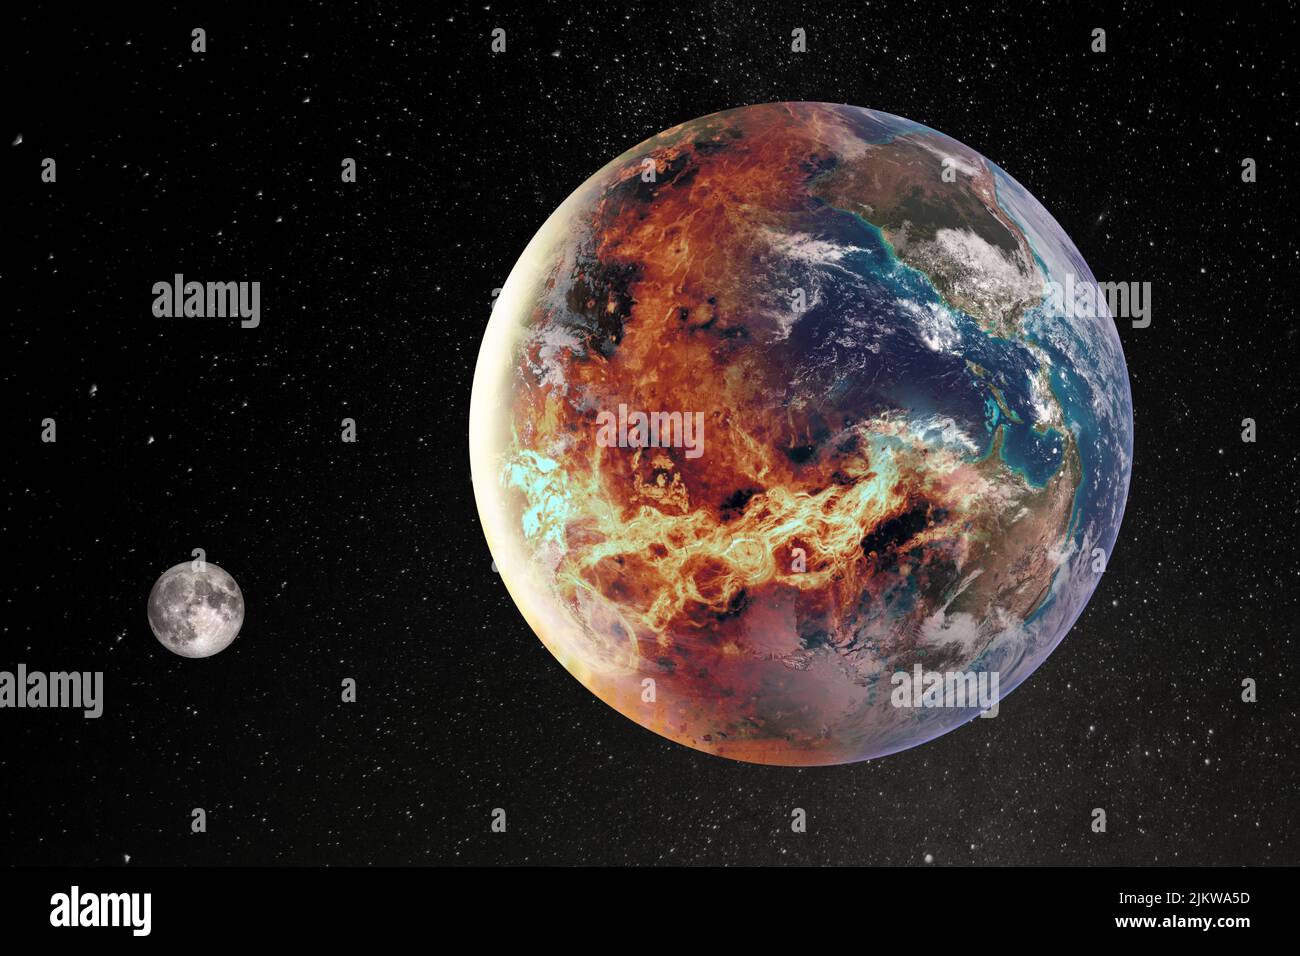 Concept de réchauffement de la planète et d'extinction massive - la moitié de la planète Terre en feu. Éléments de cette image fournis par la NASA. Banque D'Images